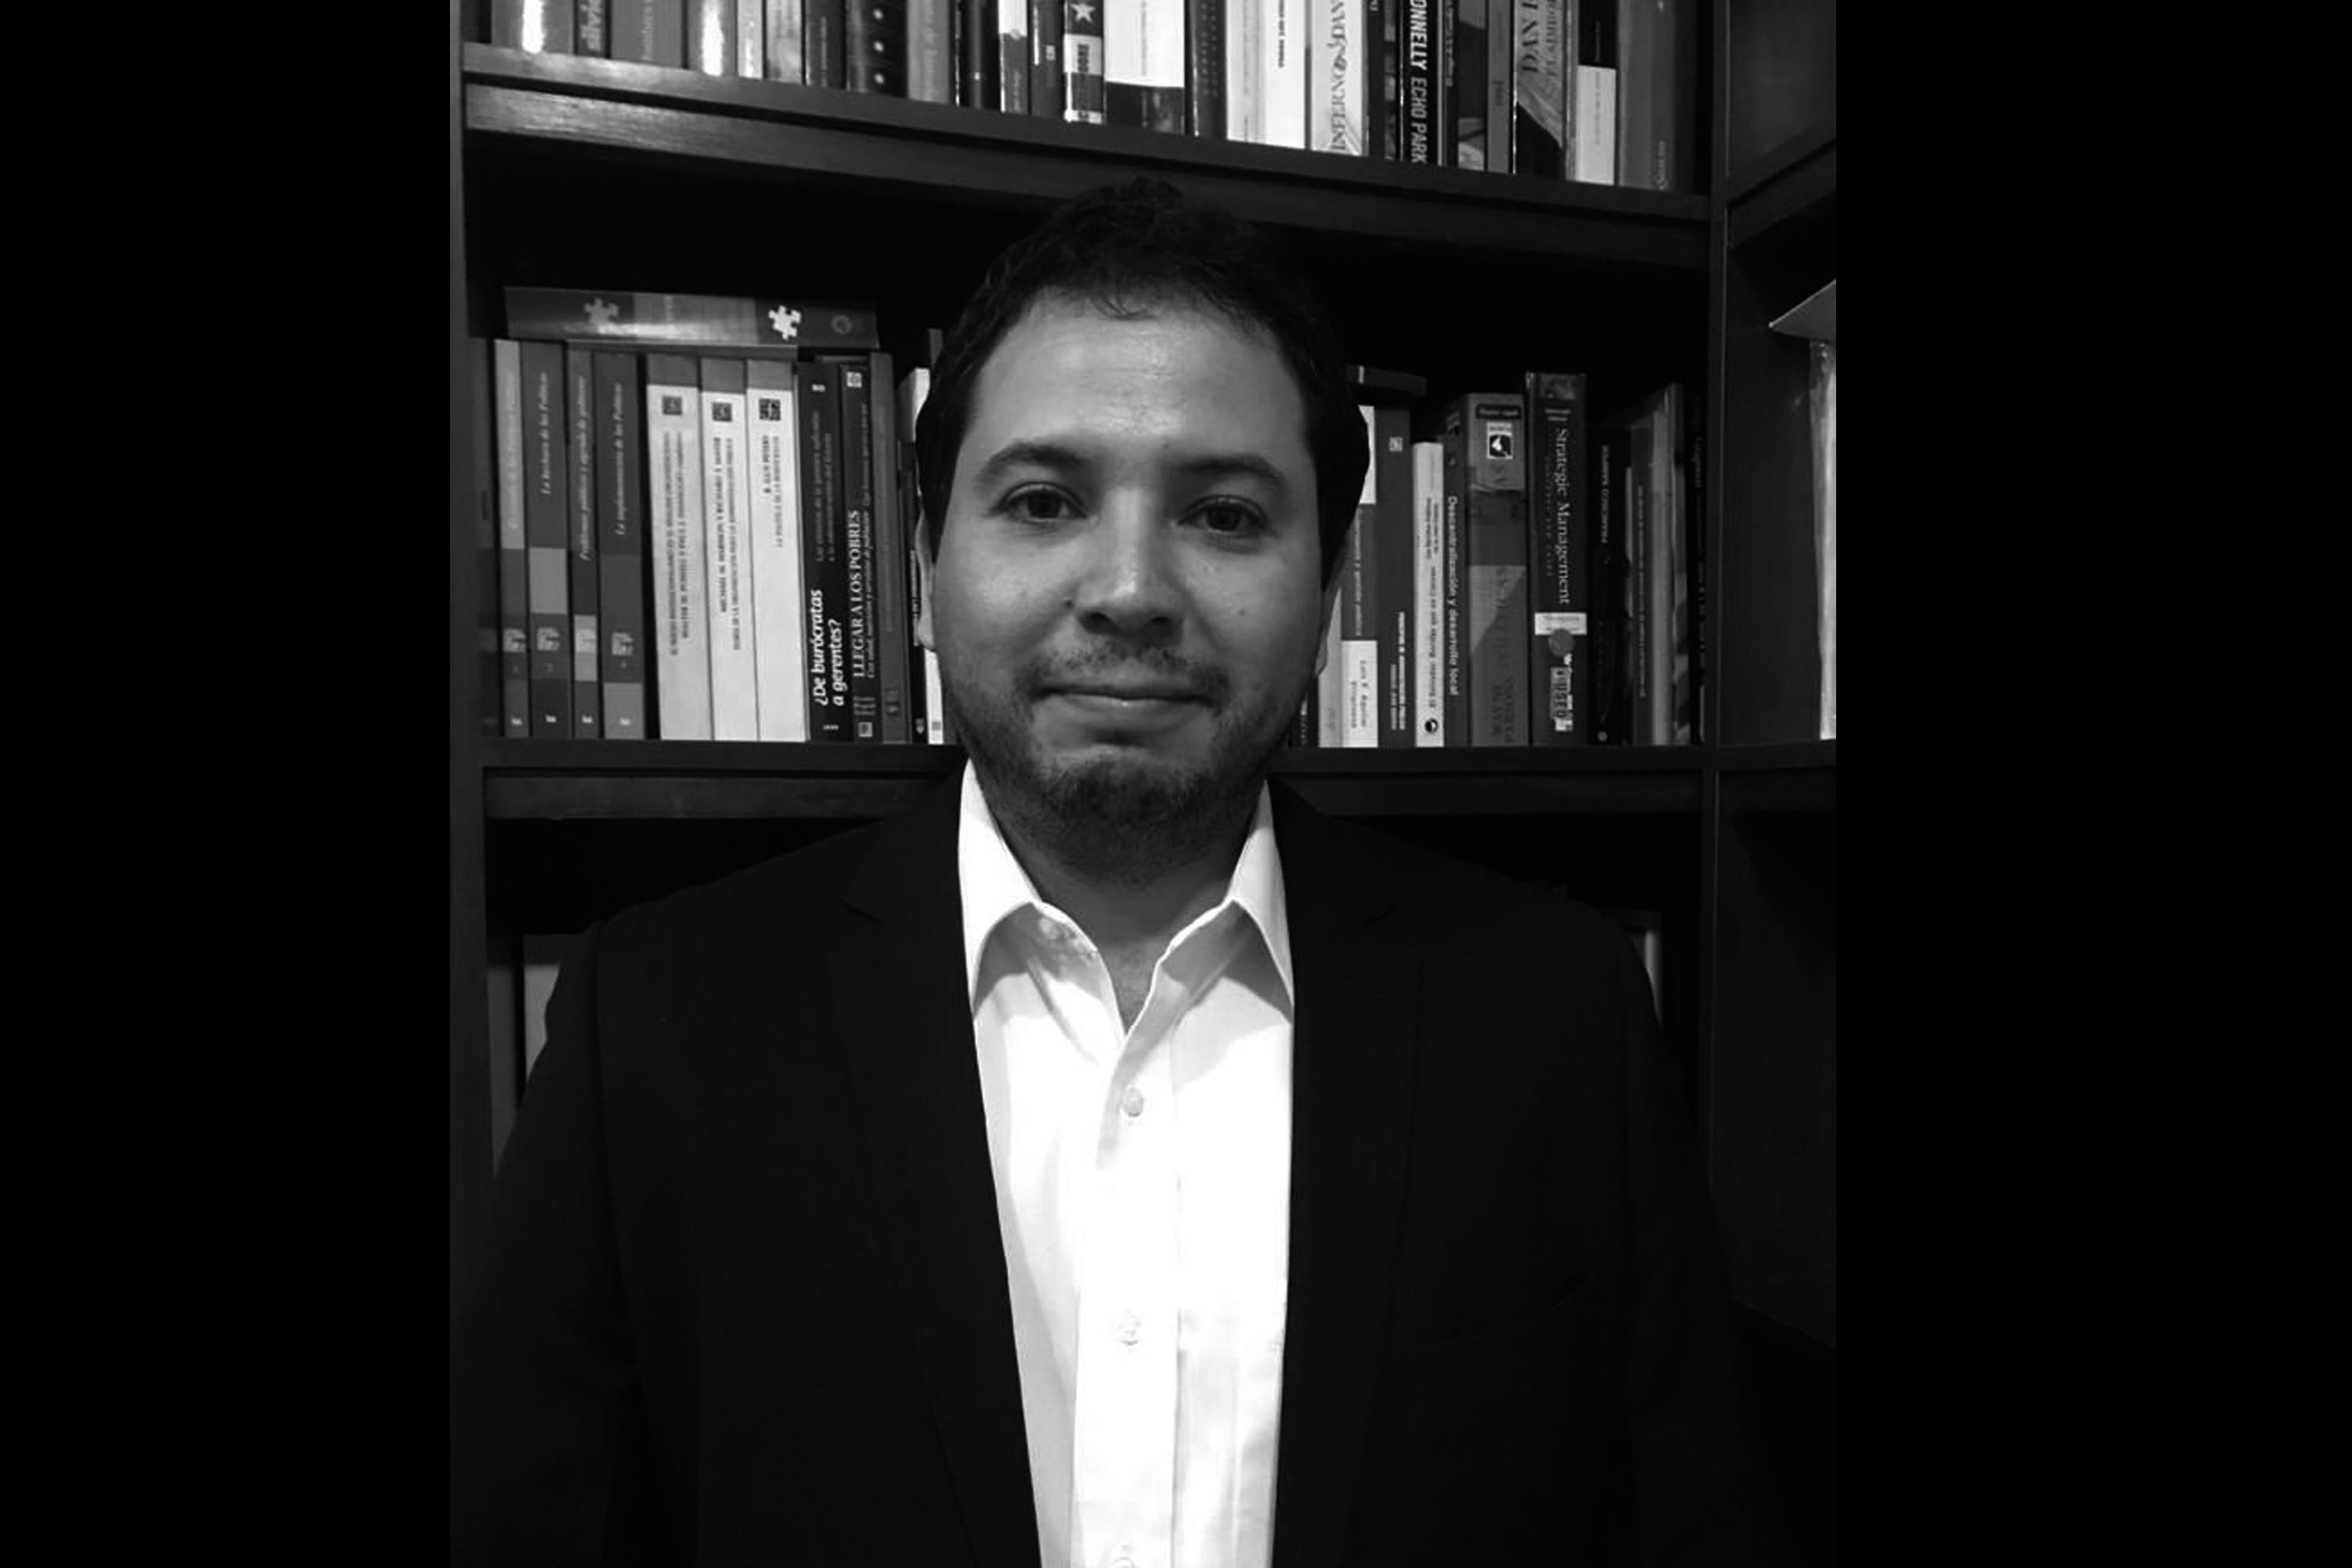 Luis Enrique Amaya es consultor internacional e investigador en materia de seguridad ciudadana, asesor de organismos multilaterales y agencias de cooperación internacional, experto en análisis y gestión de políticas públicas de seguridad basadas en evidencia.